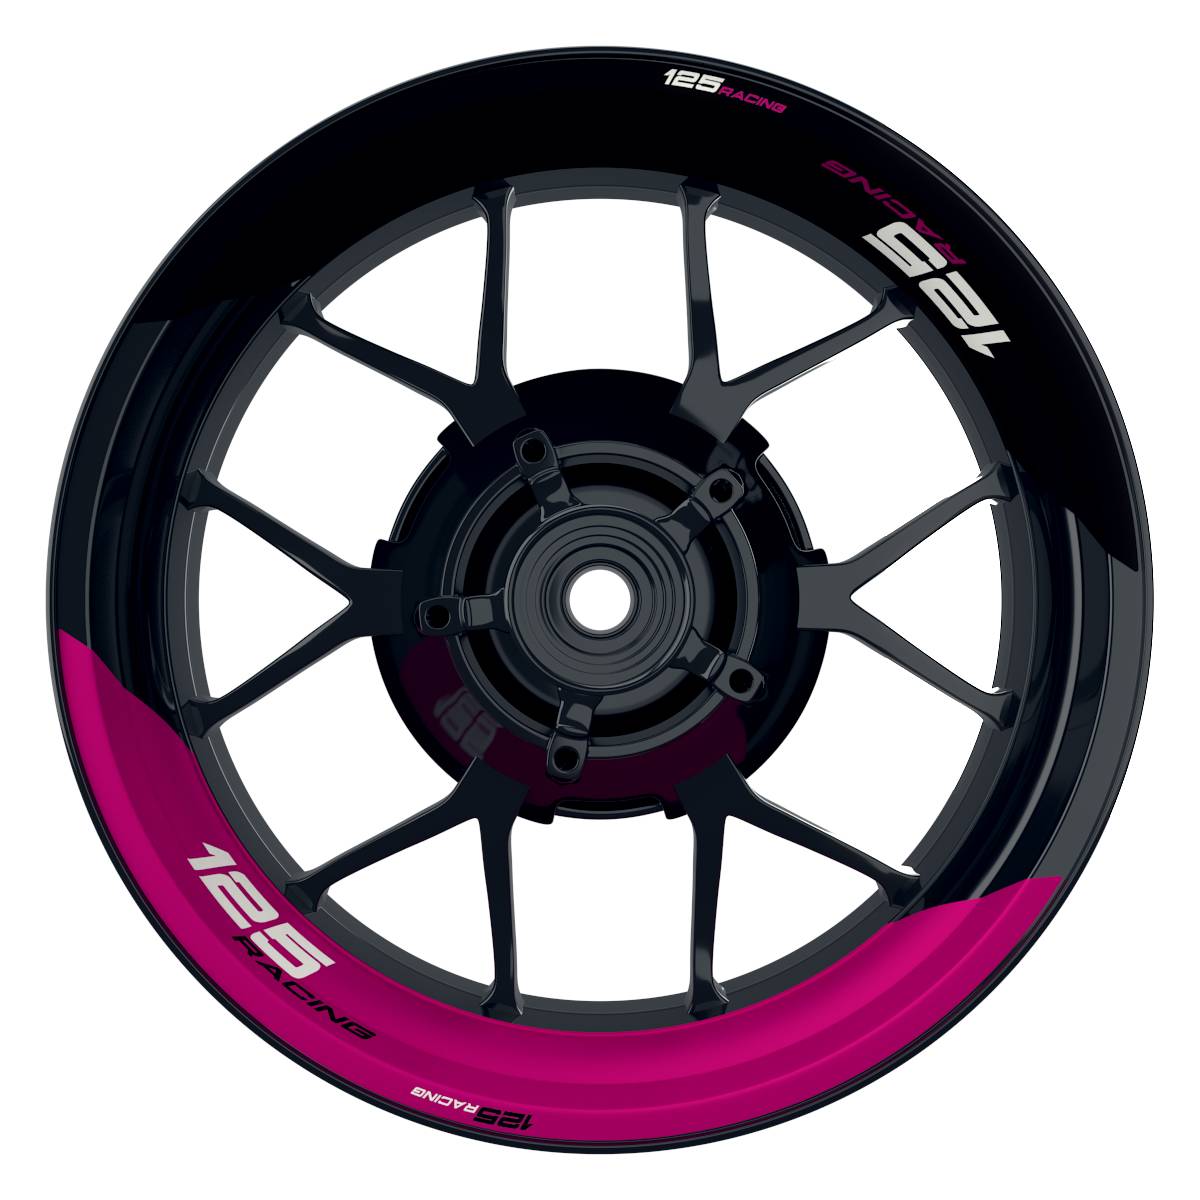 KTM Racing 125 halb halb schwarz pink Frontansicht